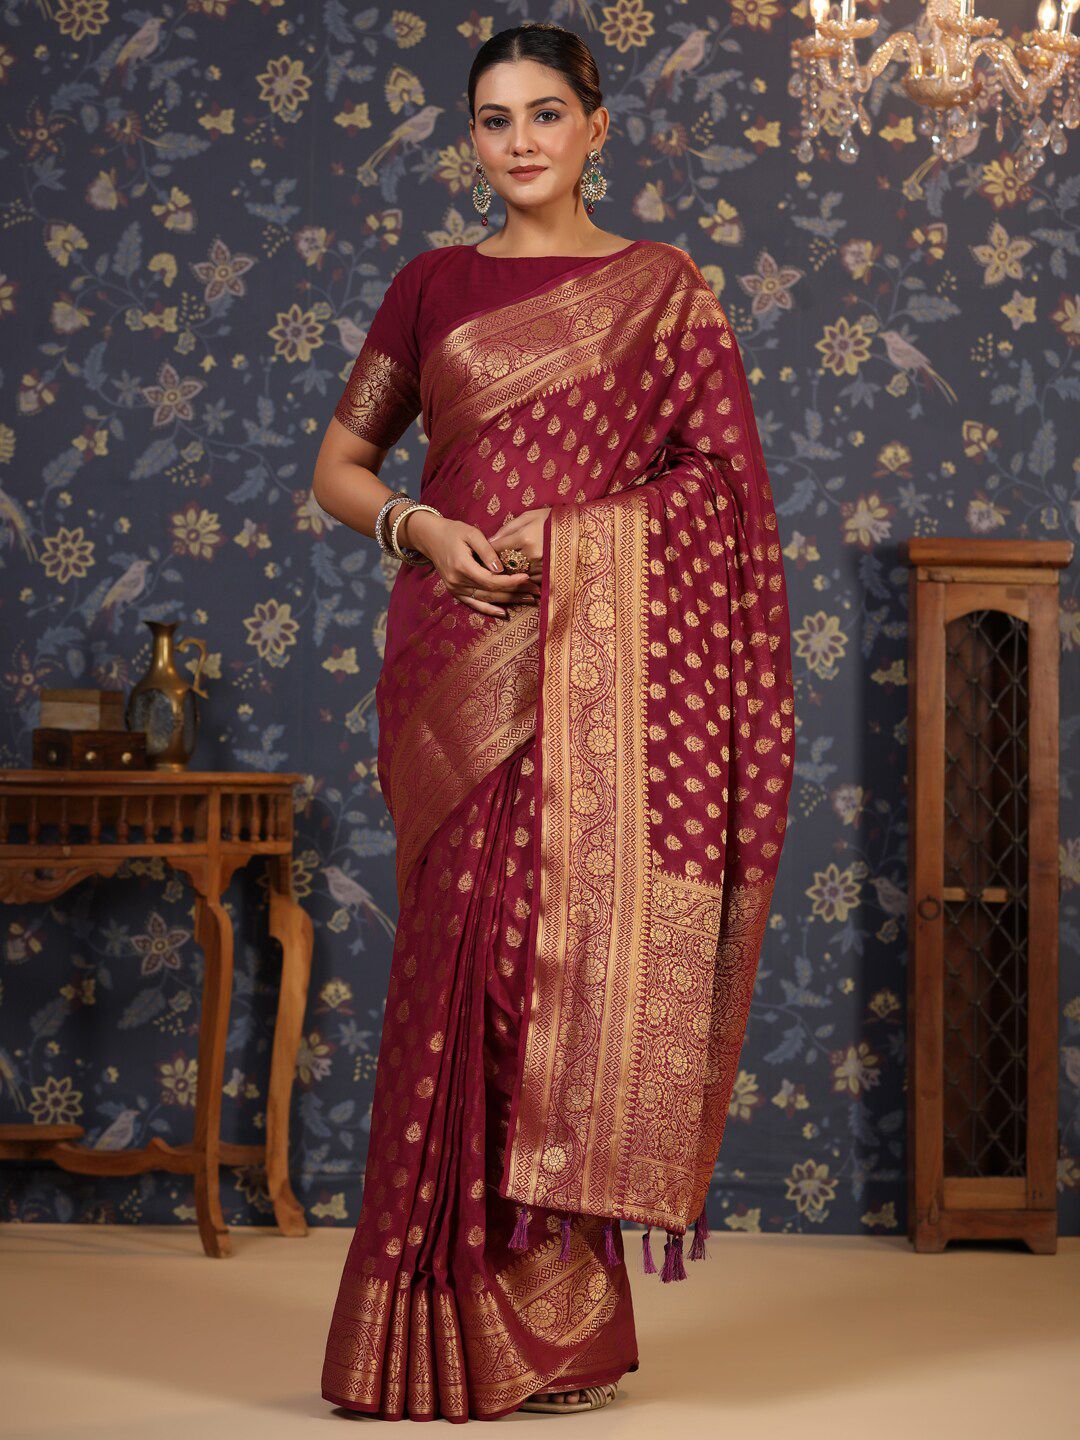 House of Pataudi Ethnic Motifs Woven Design Zari Pure Georgette Saree Price in India